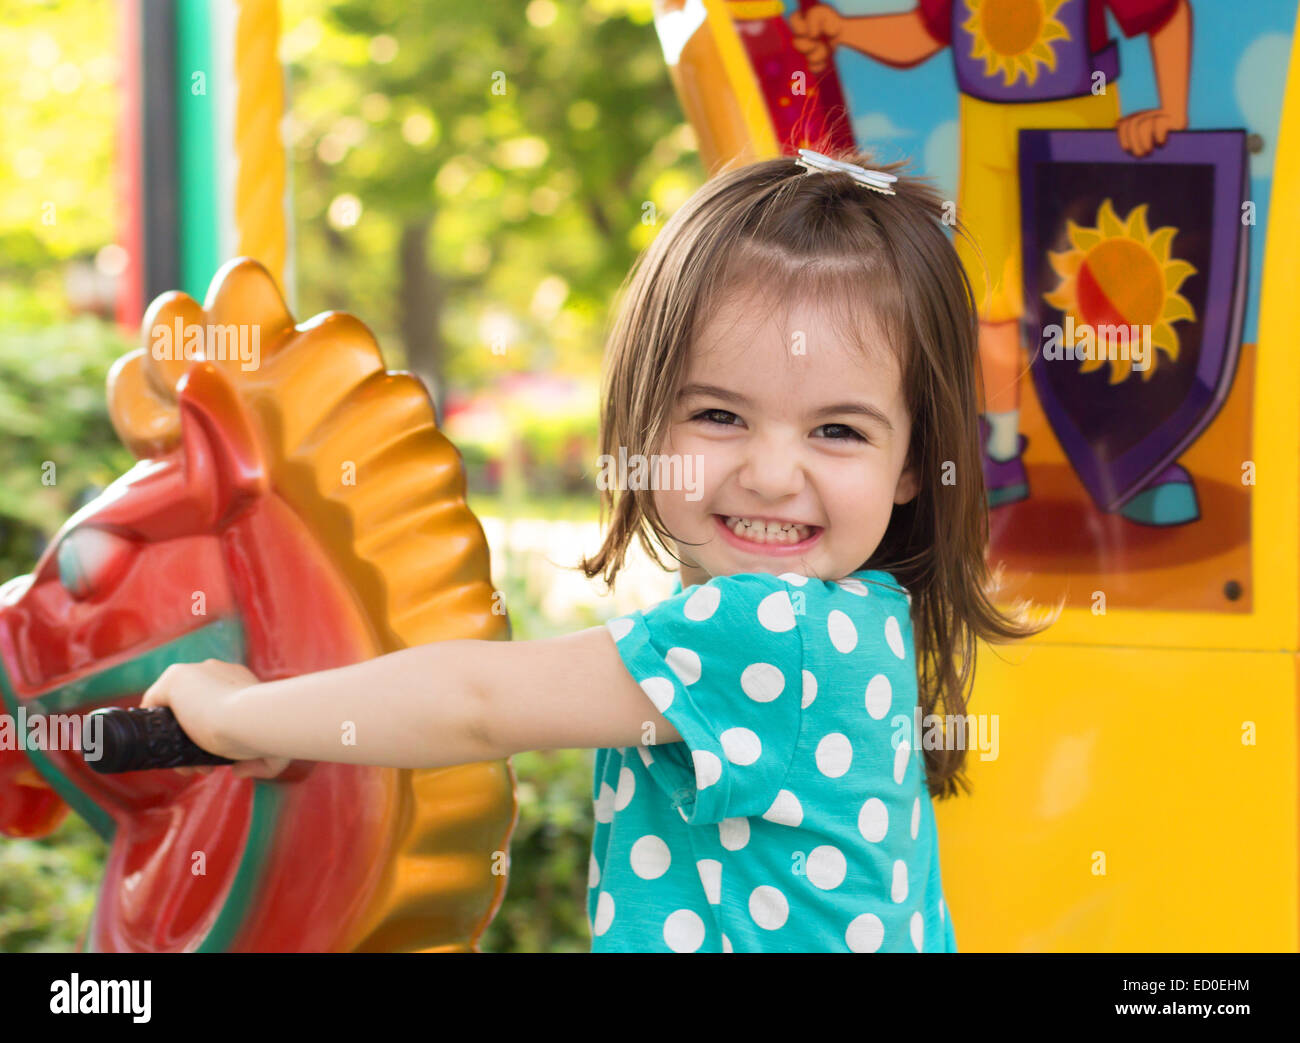 Little girl having fun in park Stock Photo